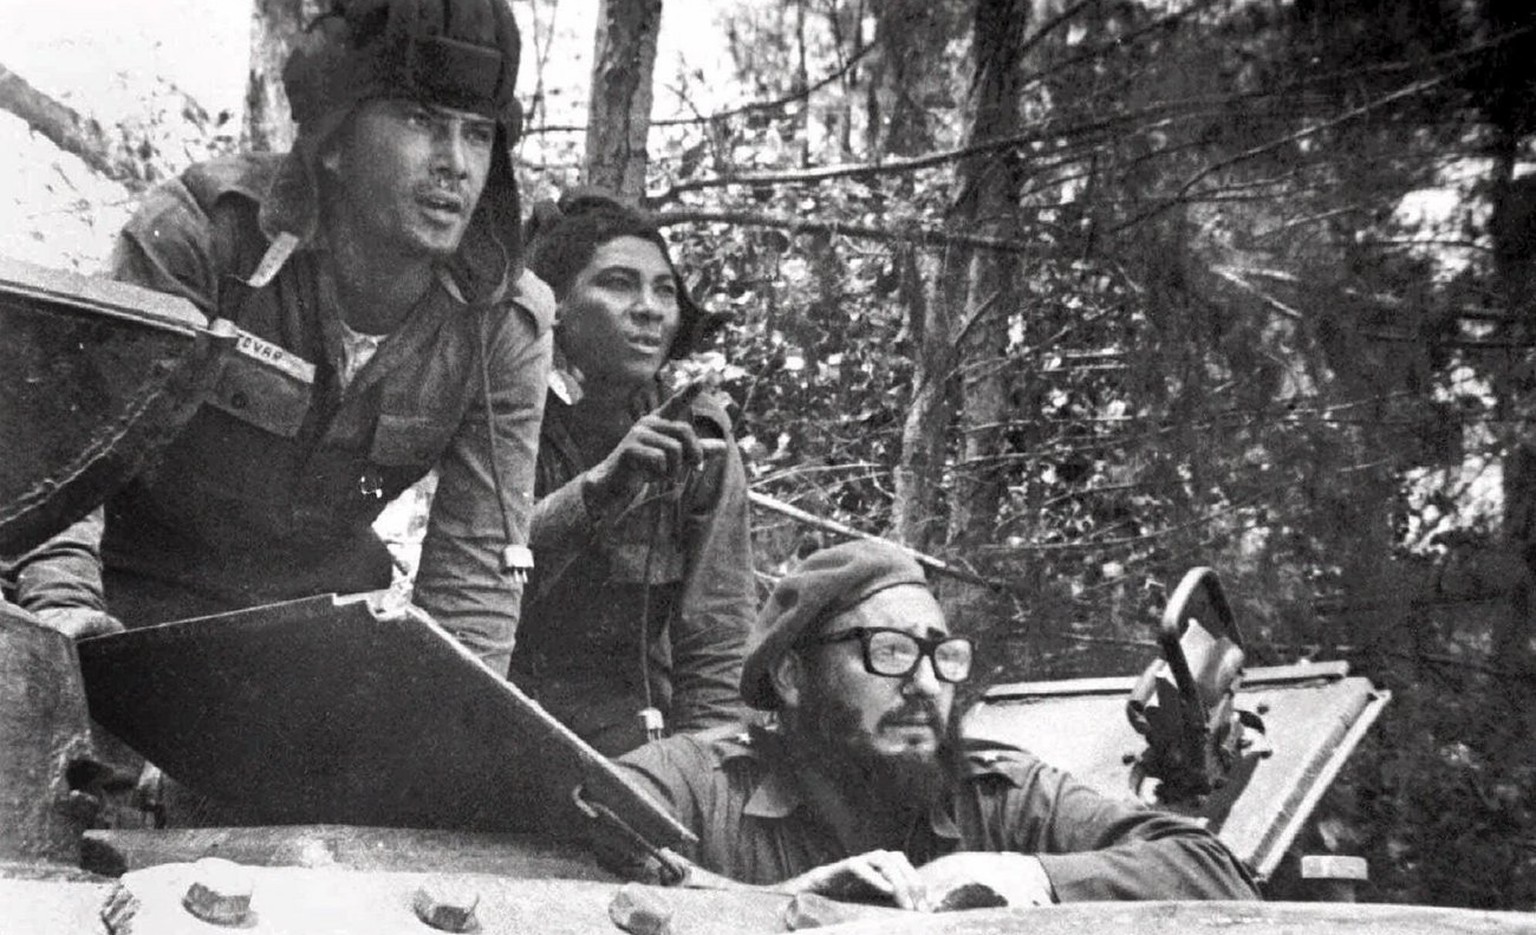 Der kubanische Revolutionsführer <a href="http://de.wikipedia.org/wiki/Fidel_Castro" target="_blank">Fidel Castro</a> (unten rechts) in einem Panzer während der Invasion in der Schweinebucht.&nbsp;